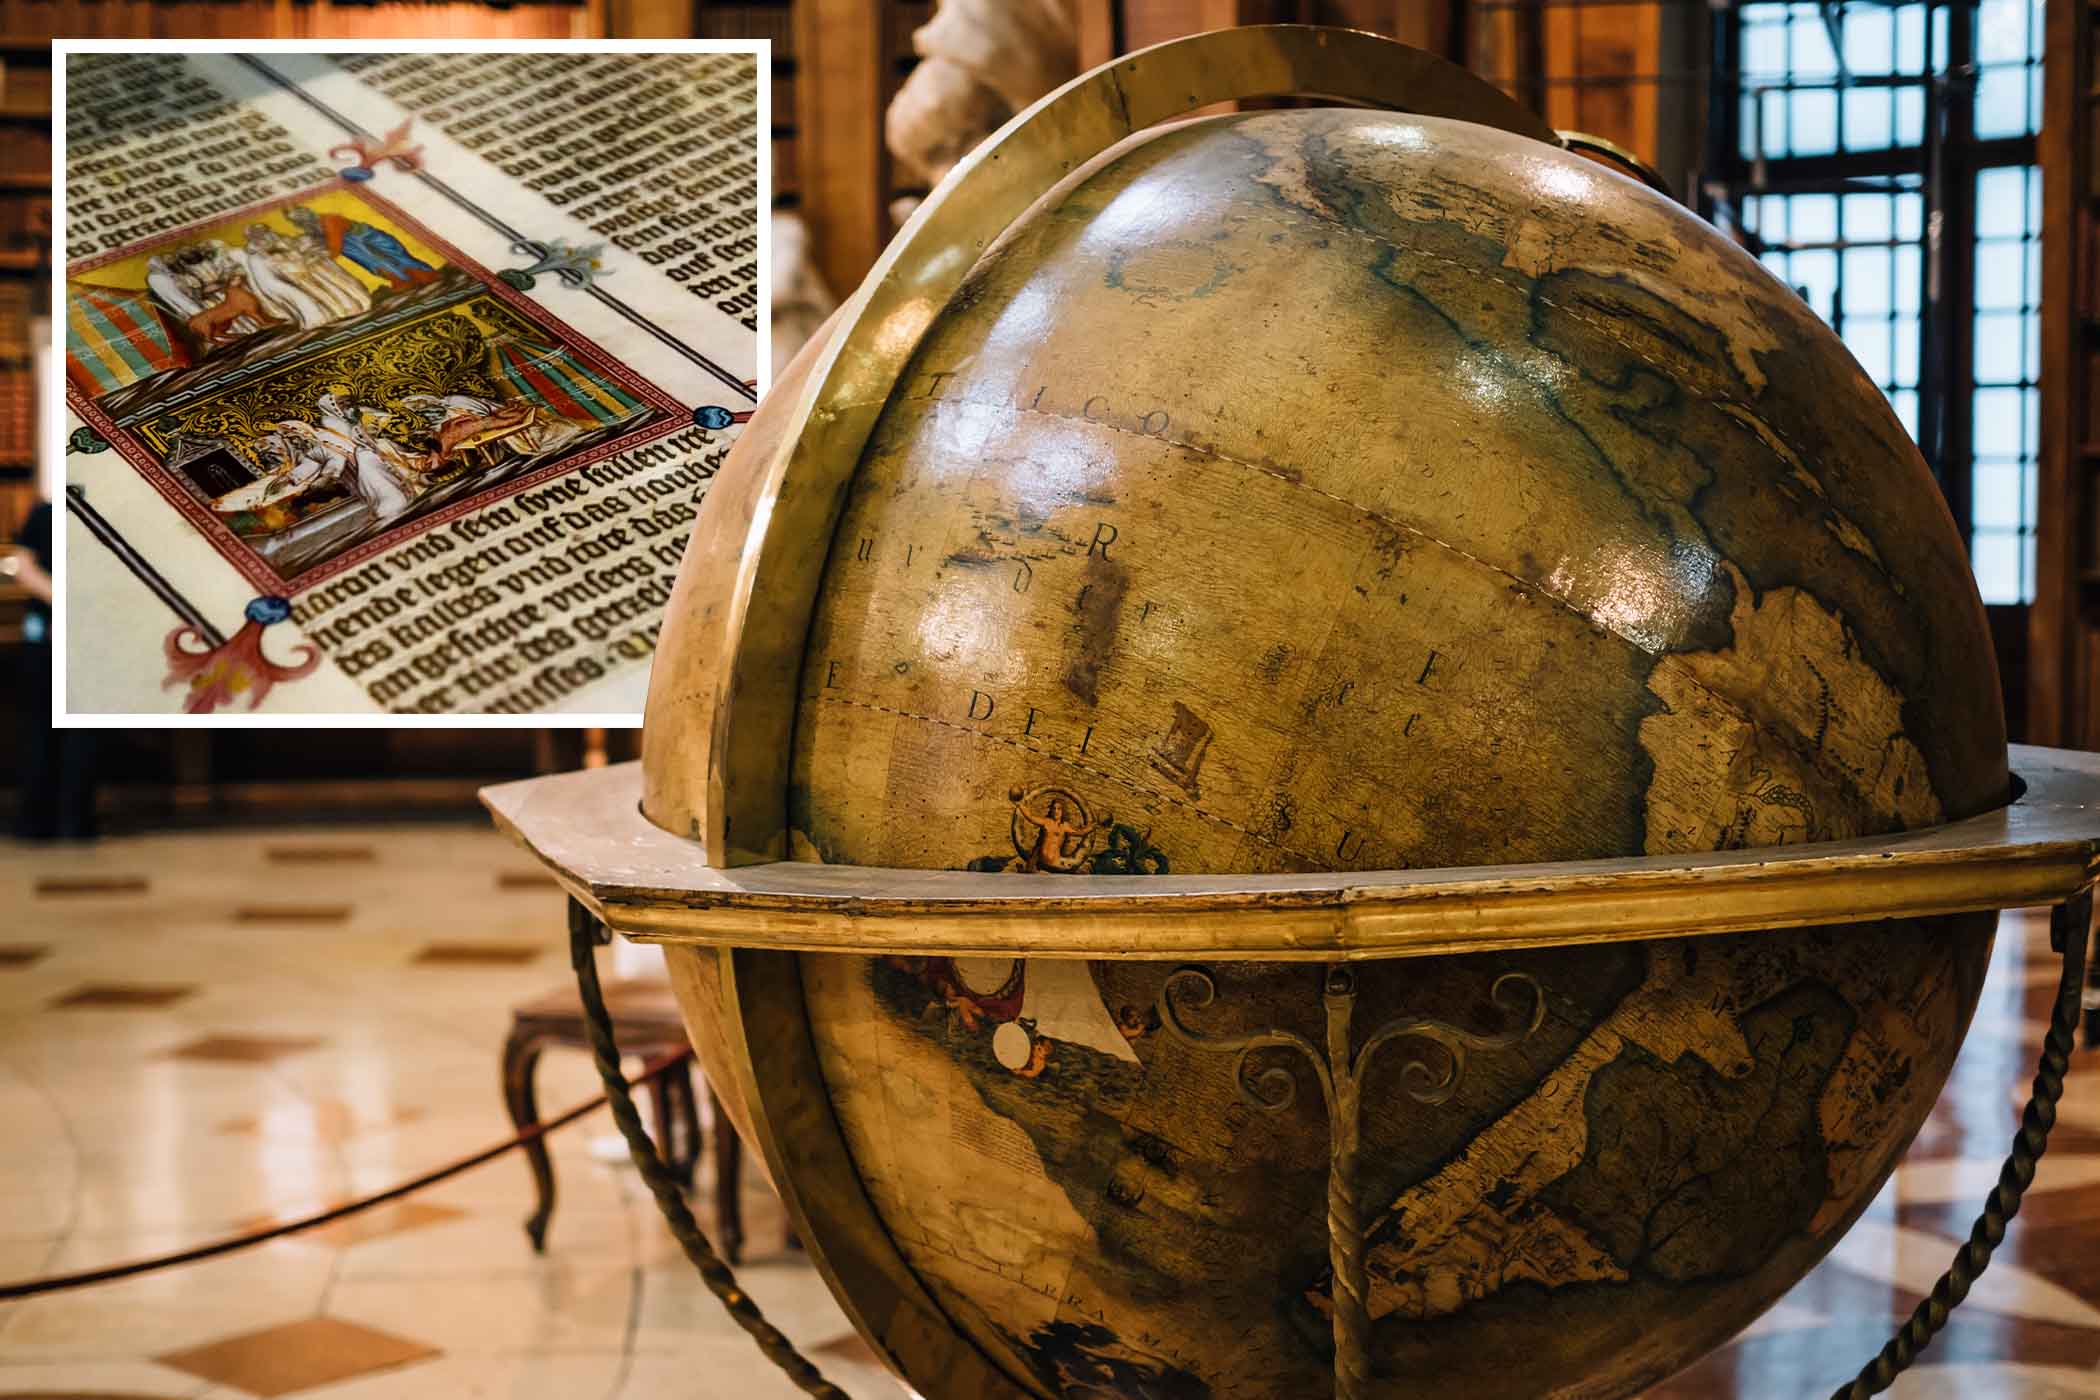 Một quả địa cầu bên trong Thư viện Quốc gia Áo. (Ảnh: Yudai/Shutterstock); (Hình nhỏ) Hình ảnh chi tiết một bản thảo cổ trong Thư viện Quốc gia Áo, thành phố Vienna. (Ảnh: Alessandro Cristiano/Shutterstock)